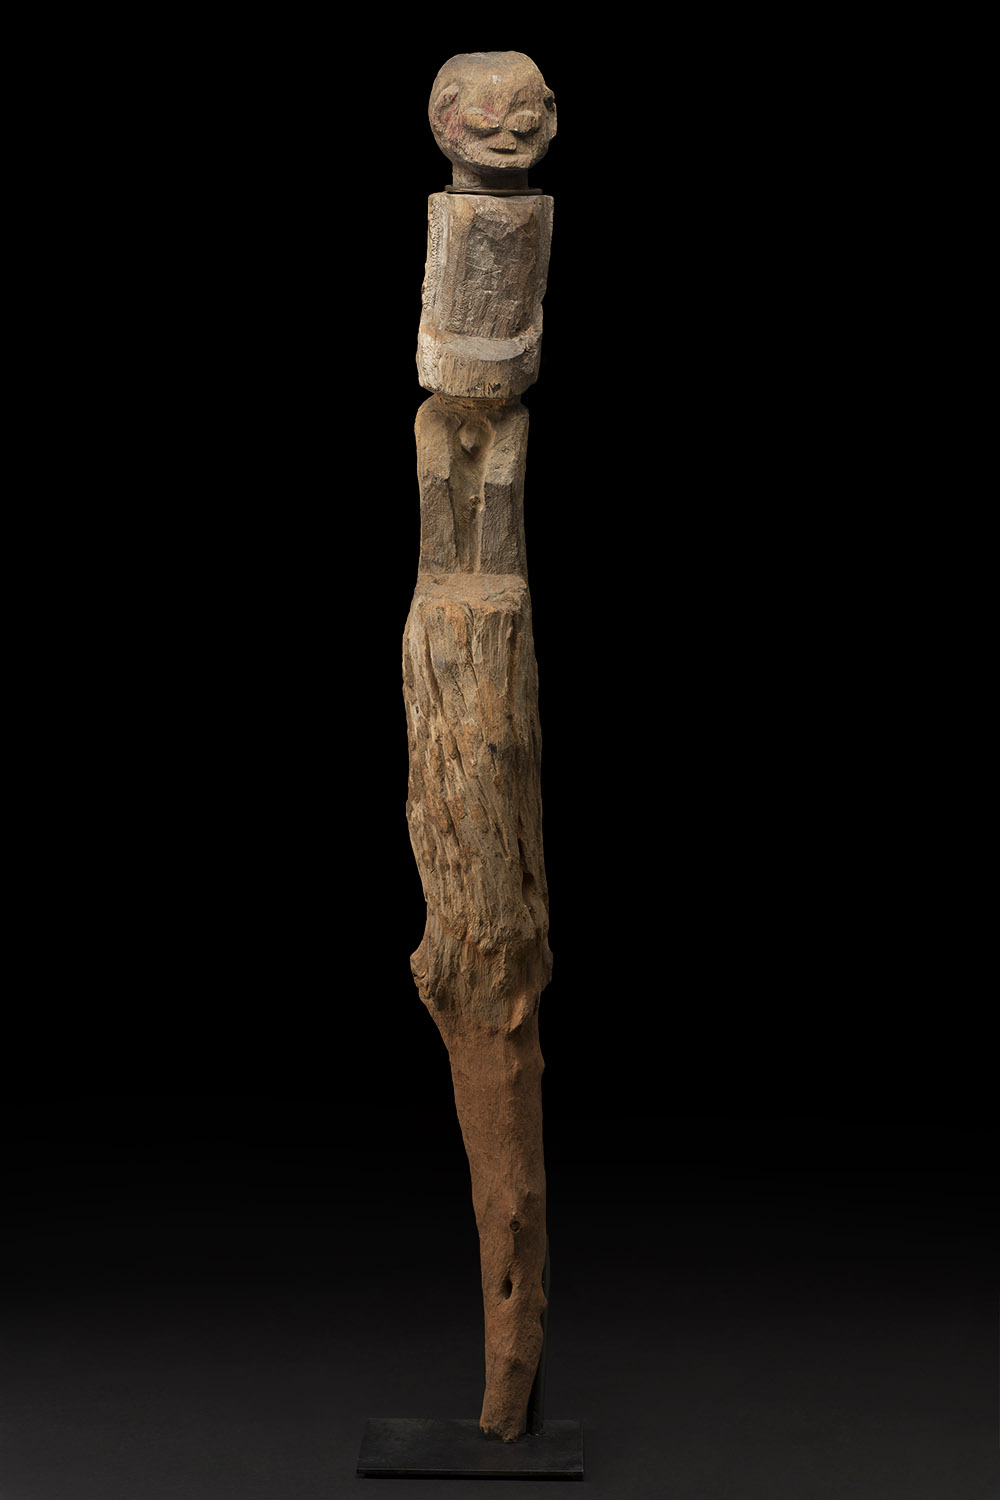   Africa    Bocio - Fon/Nago People - Benin  , Early 20th C. Wood 49 x 6.25 x 5.25 inches 124.5 x 15.9 x 13.3 cm Af 405 